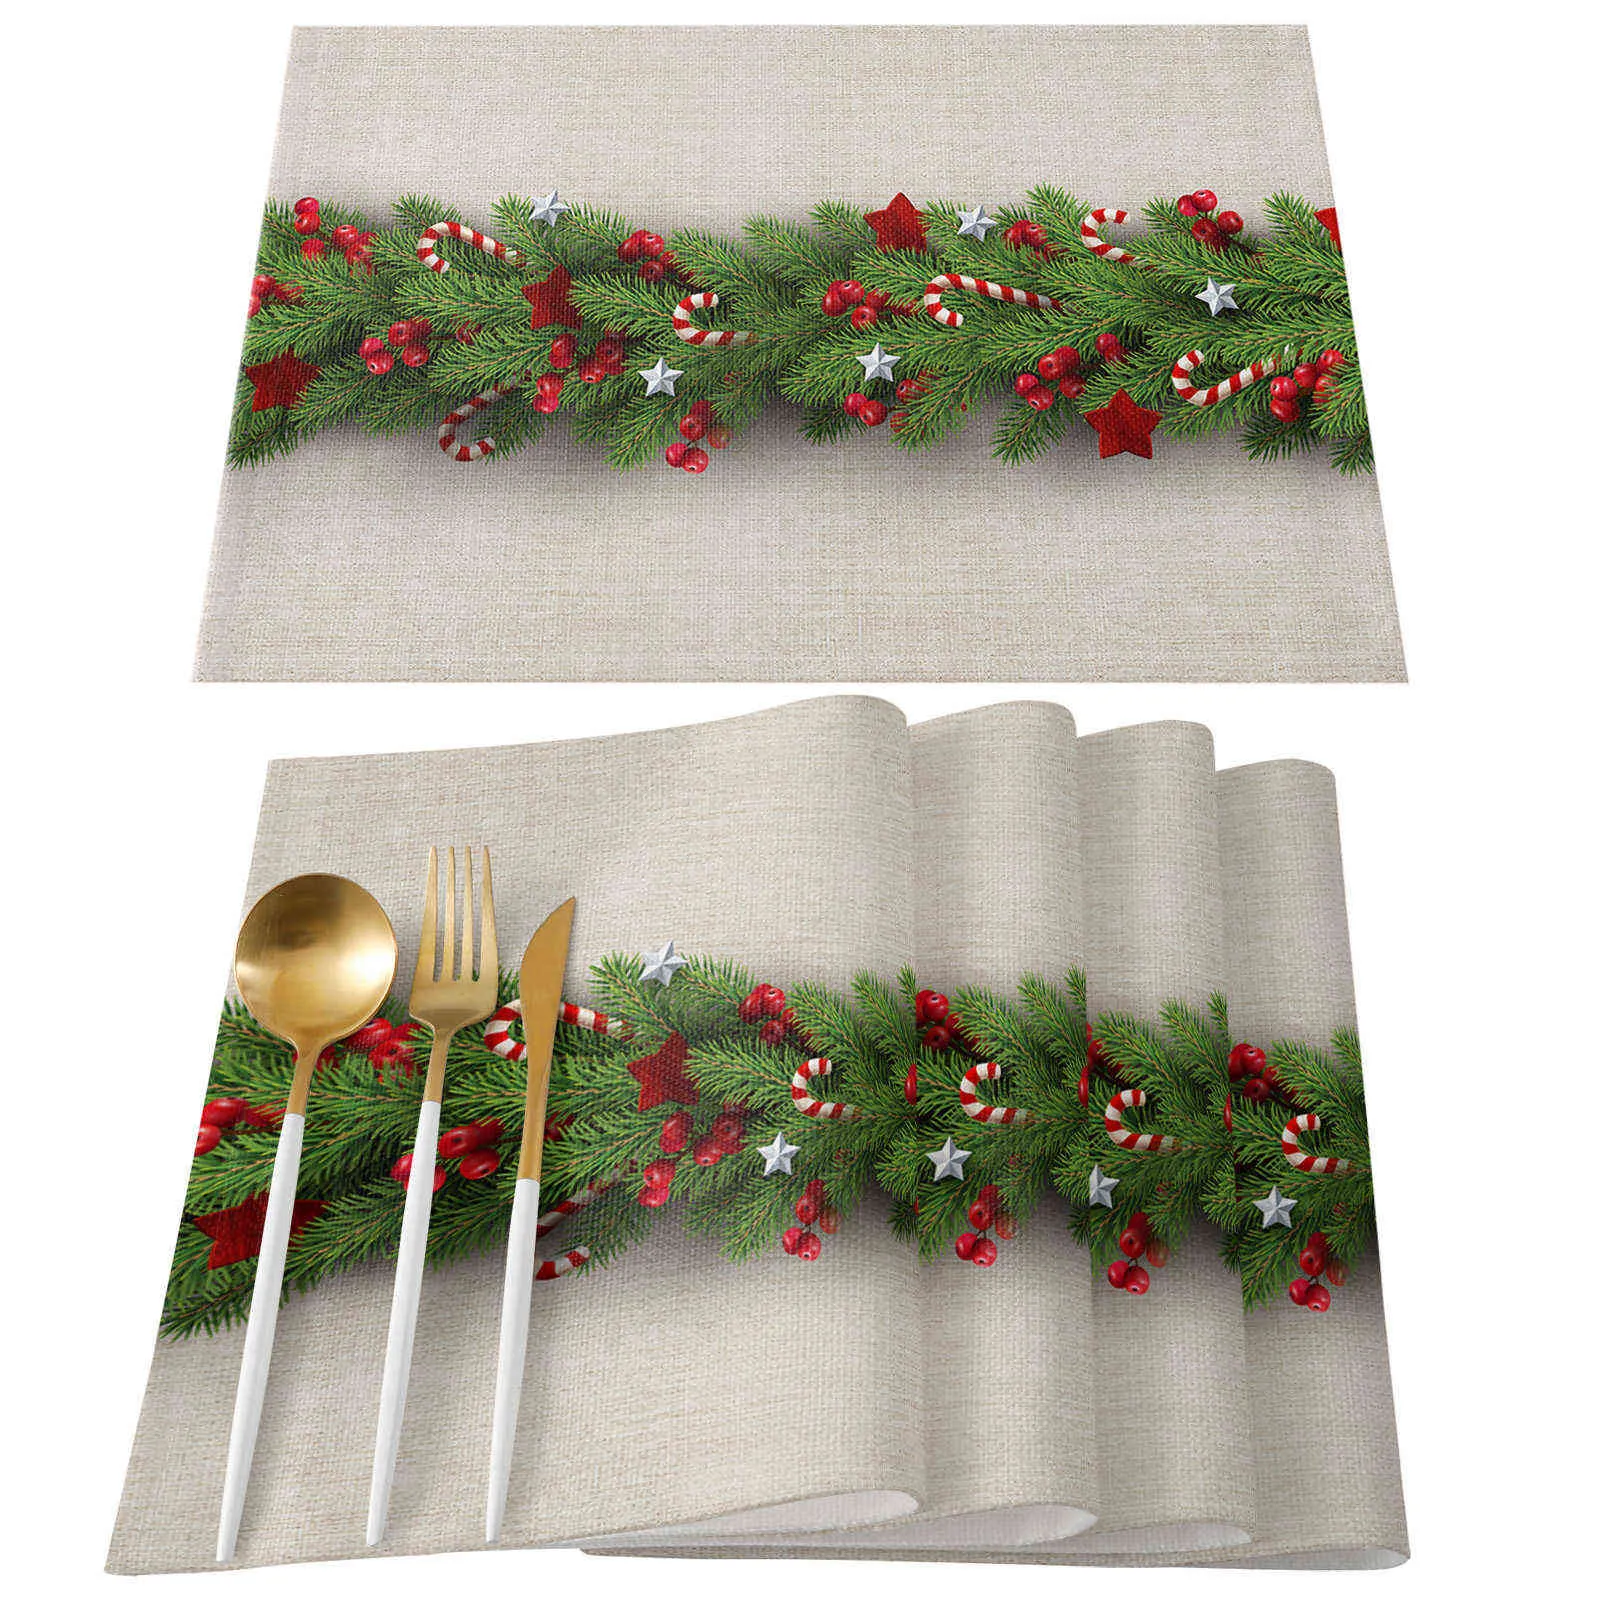 クリスマスツリーの松の針キャンディーの弓テーブルランナーの結婚式の装飾テーブルカバークリスマスの装飾211122